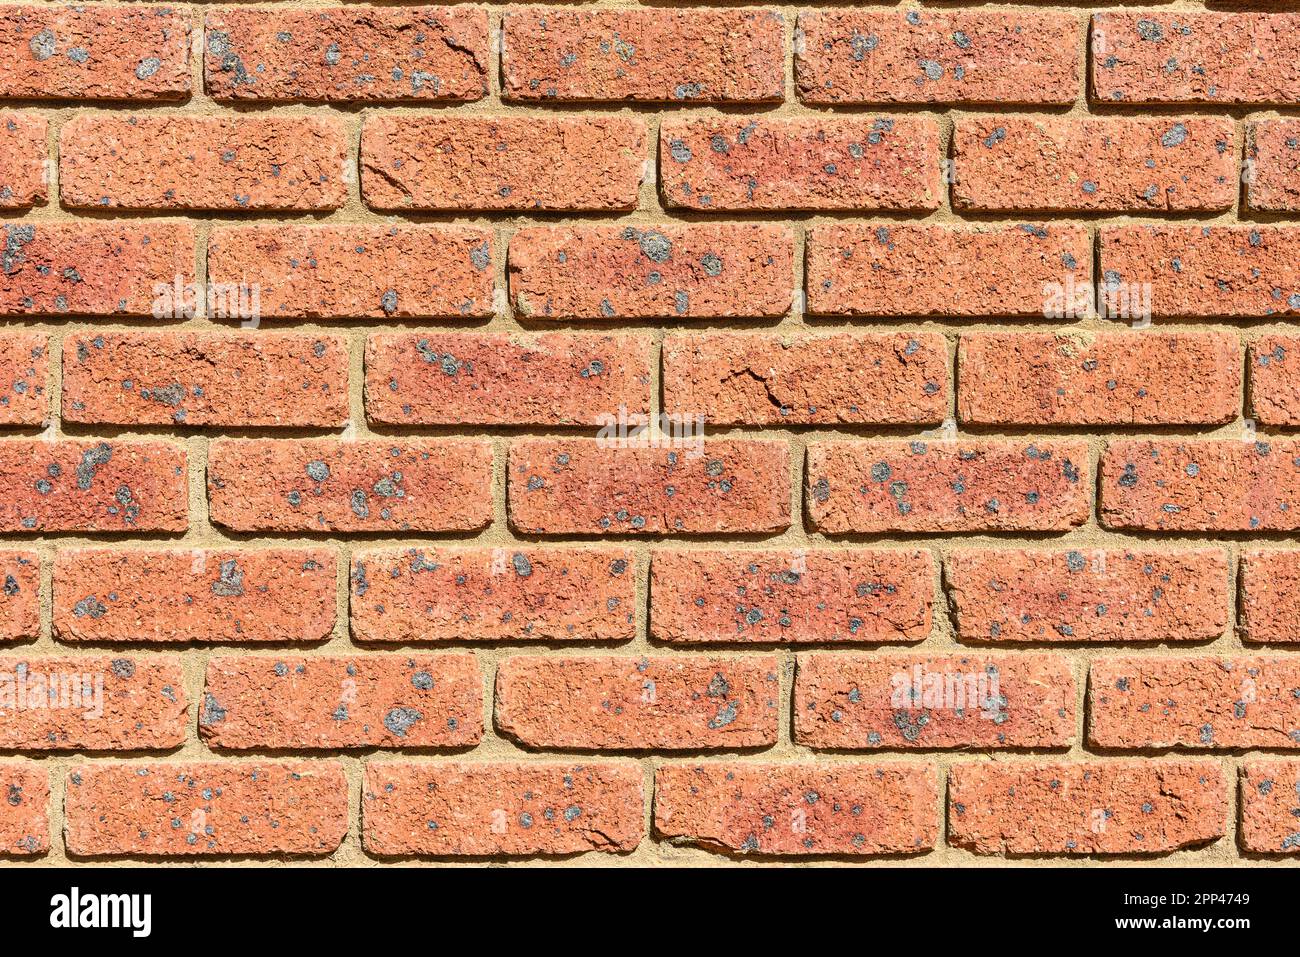 Un mur de brique rouge avec beaucoup de briques ayant des taches noires sur eux Banque D'Images